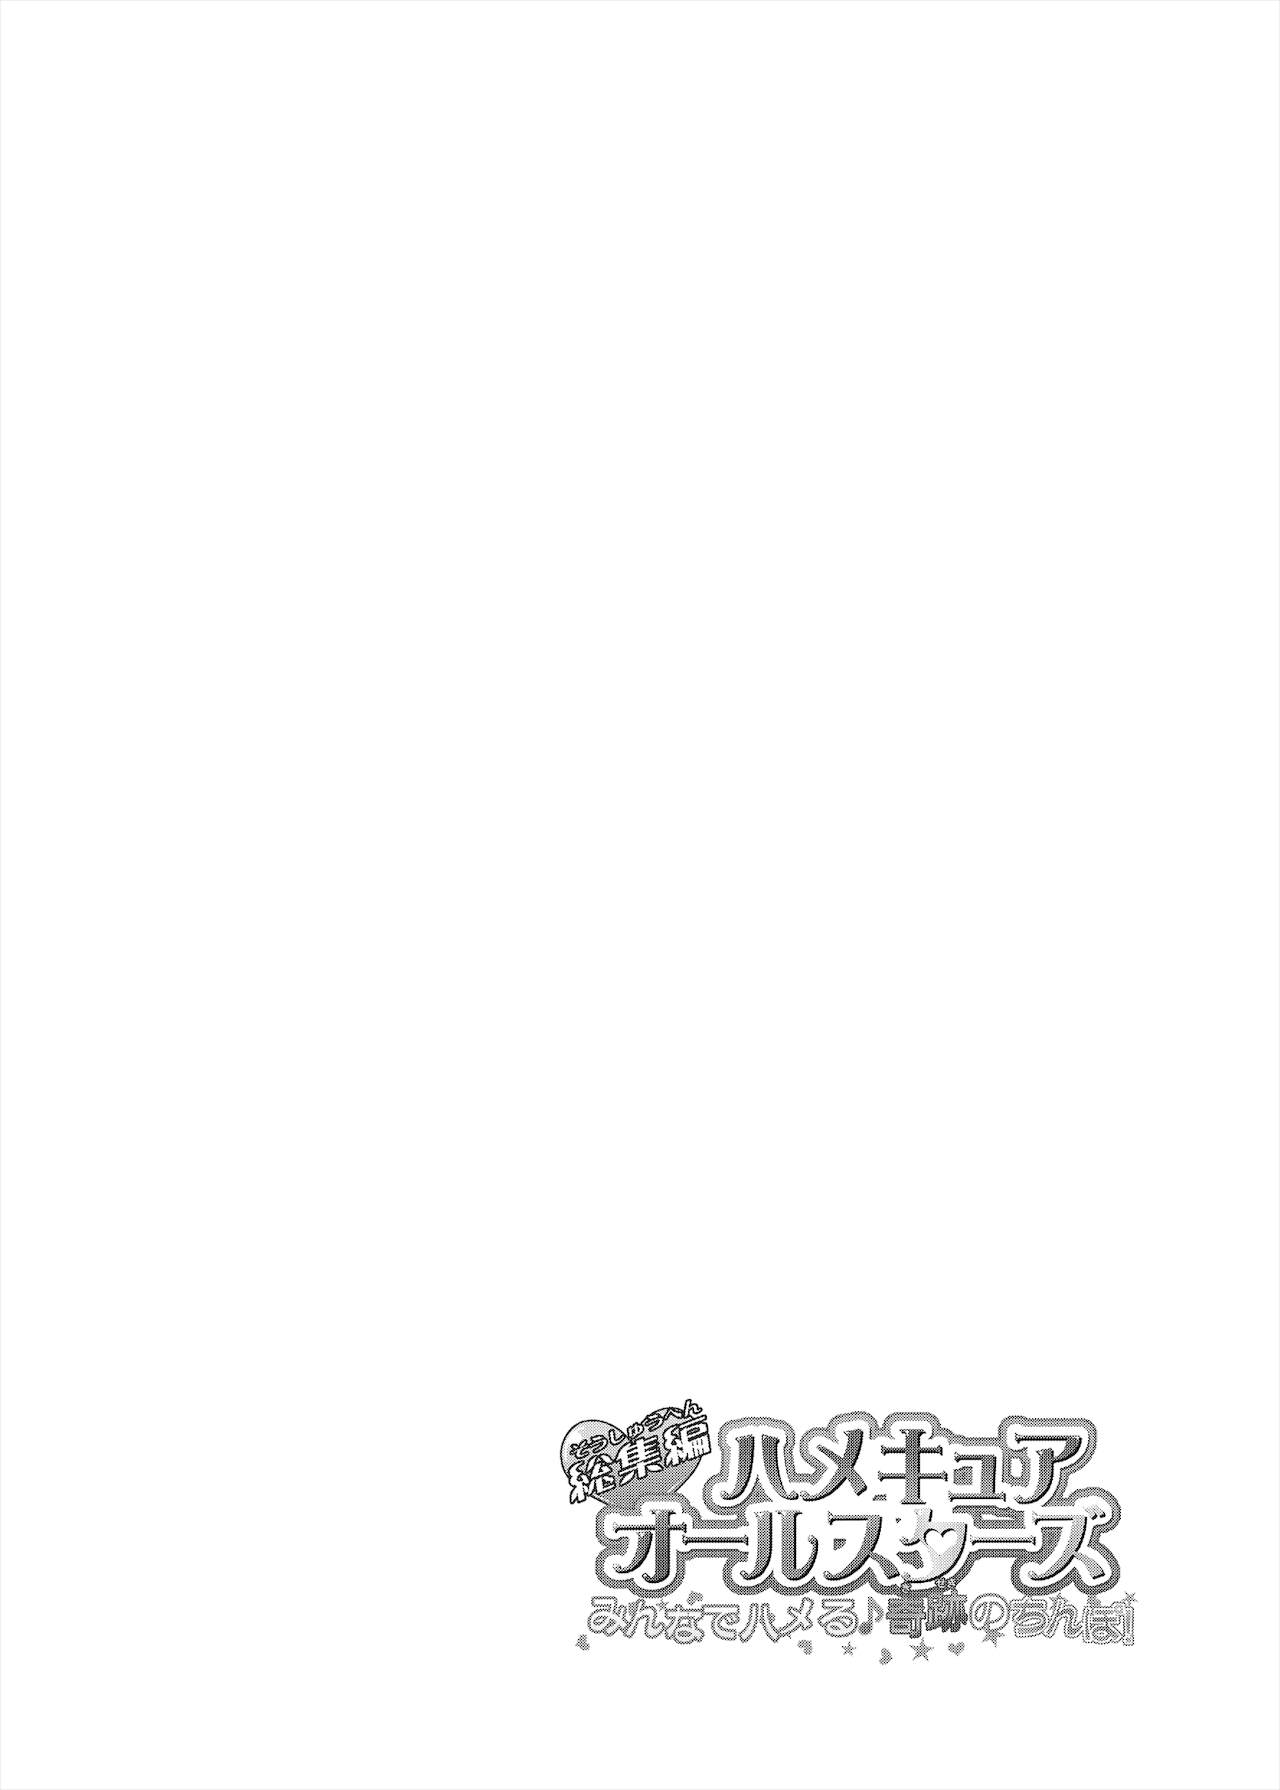 [コンディメントは8分目 (前島龍)] 総集編 ハメキュアオールスターズ みんなでハメる♪奇跡のちんぽ! (トロピカル～ジュ!プリキュア) [DL版]